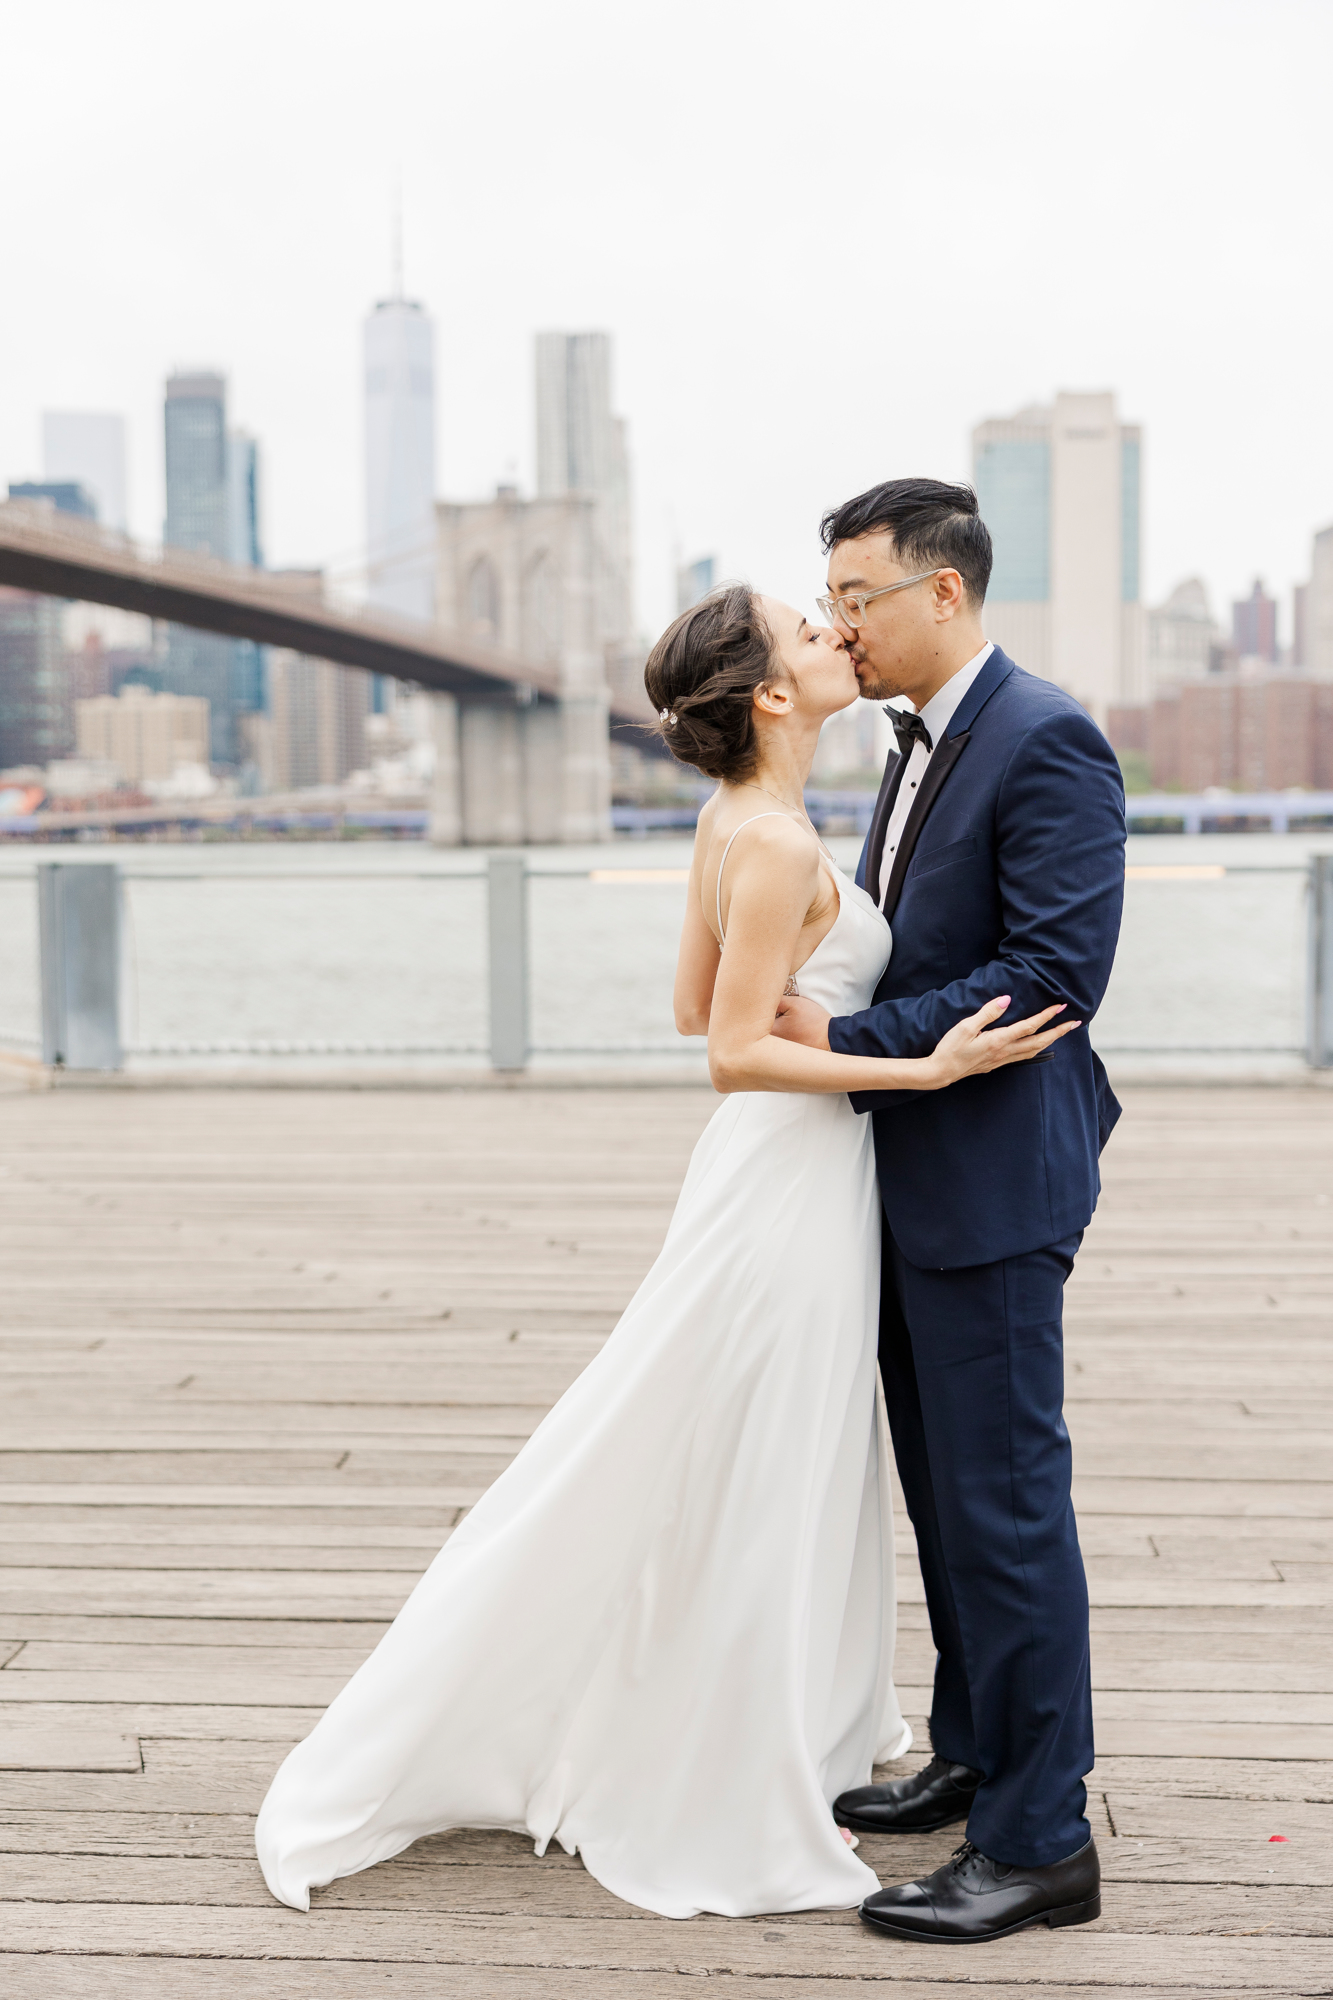 Perfect Deity Wedding in Brooklyn Bridge Park